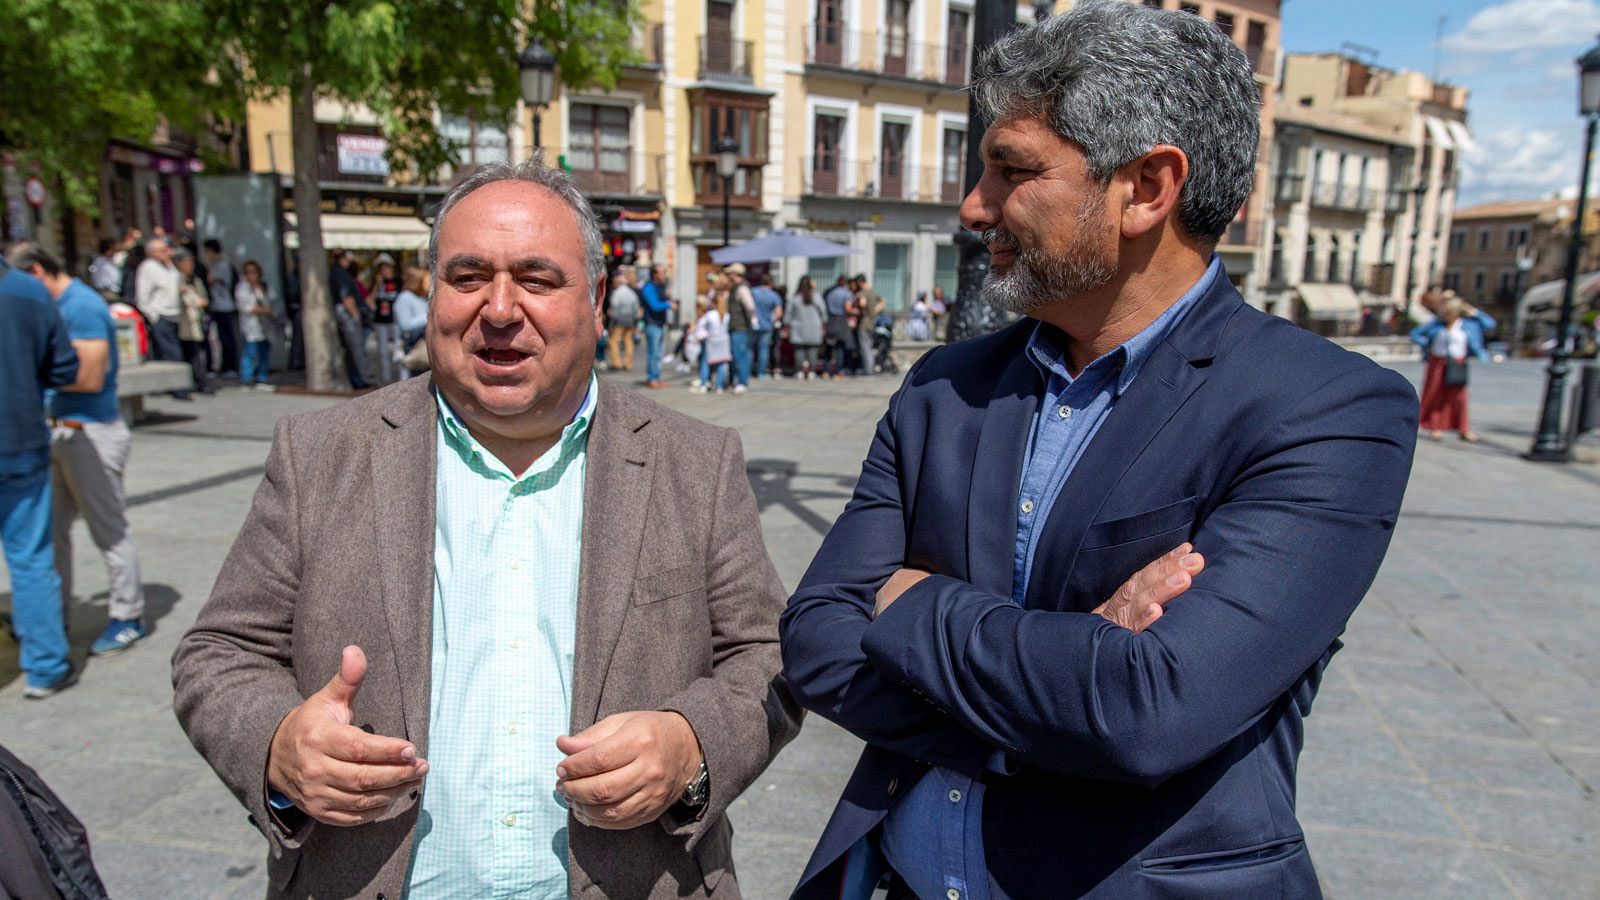 El candidato PP al Congreso por Toledo, Vicente Tirado, junto al candidato número uno al Congreso por Huelva, Juan José Cortés